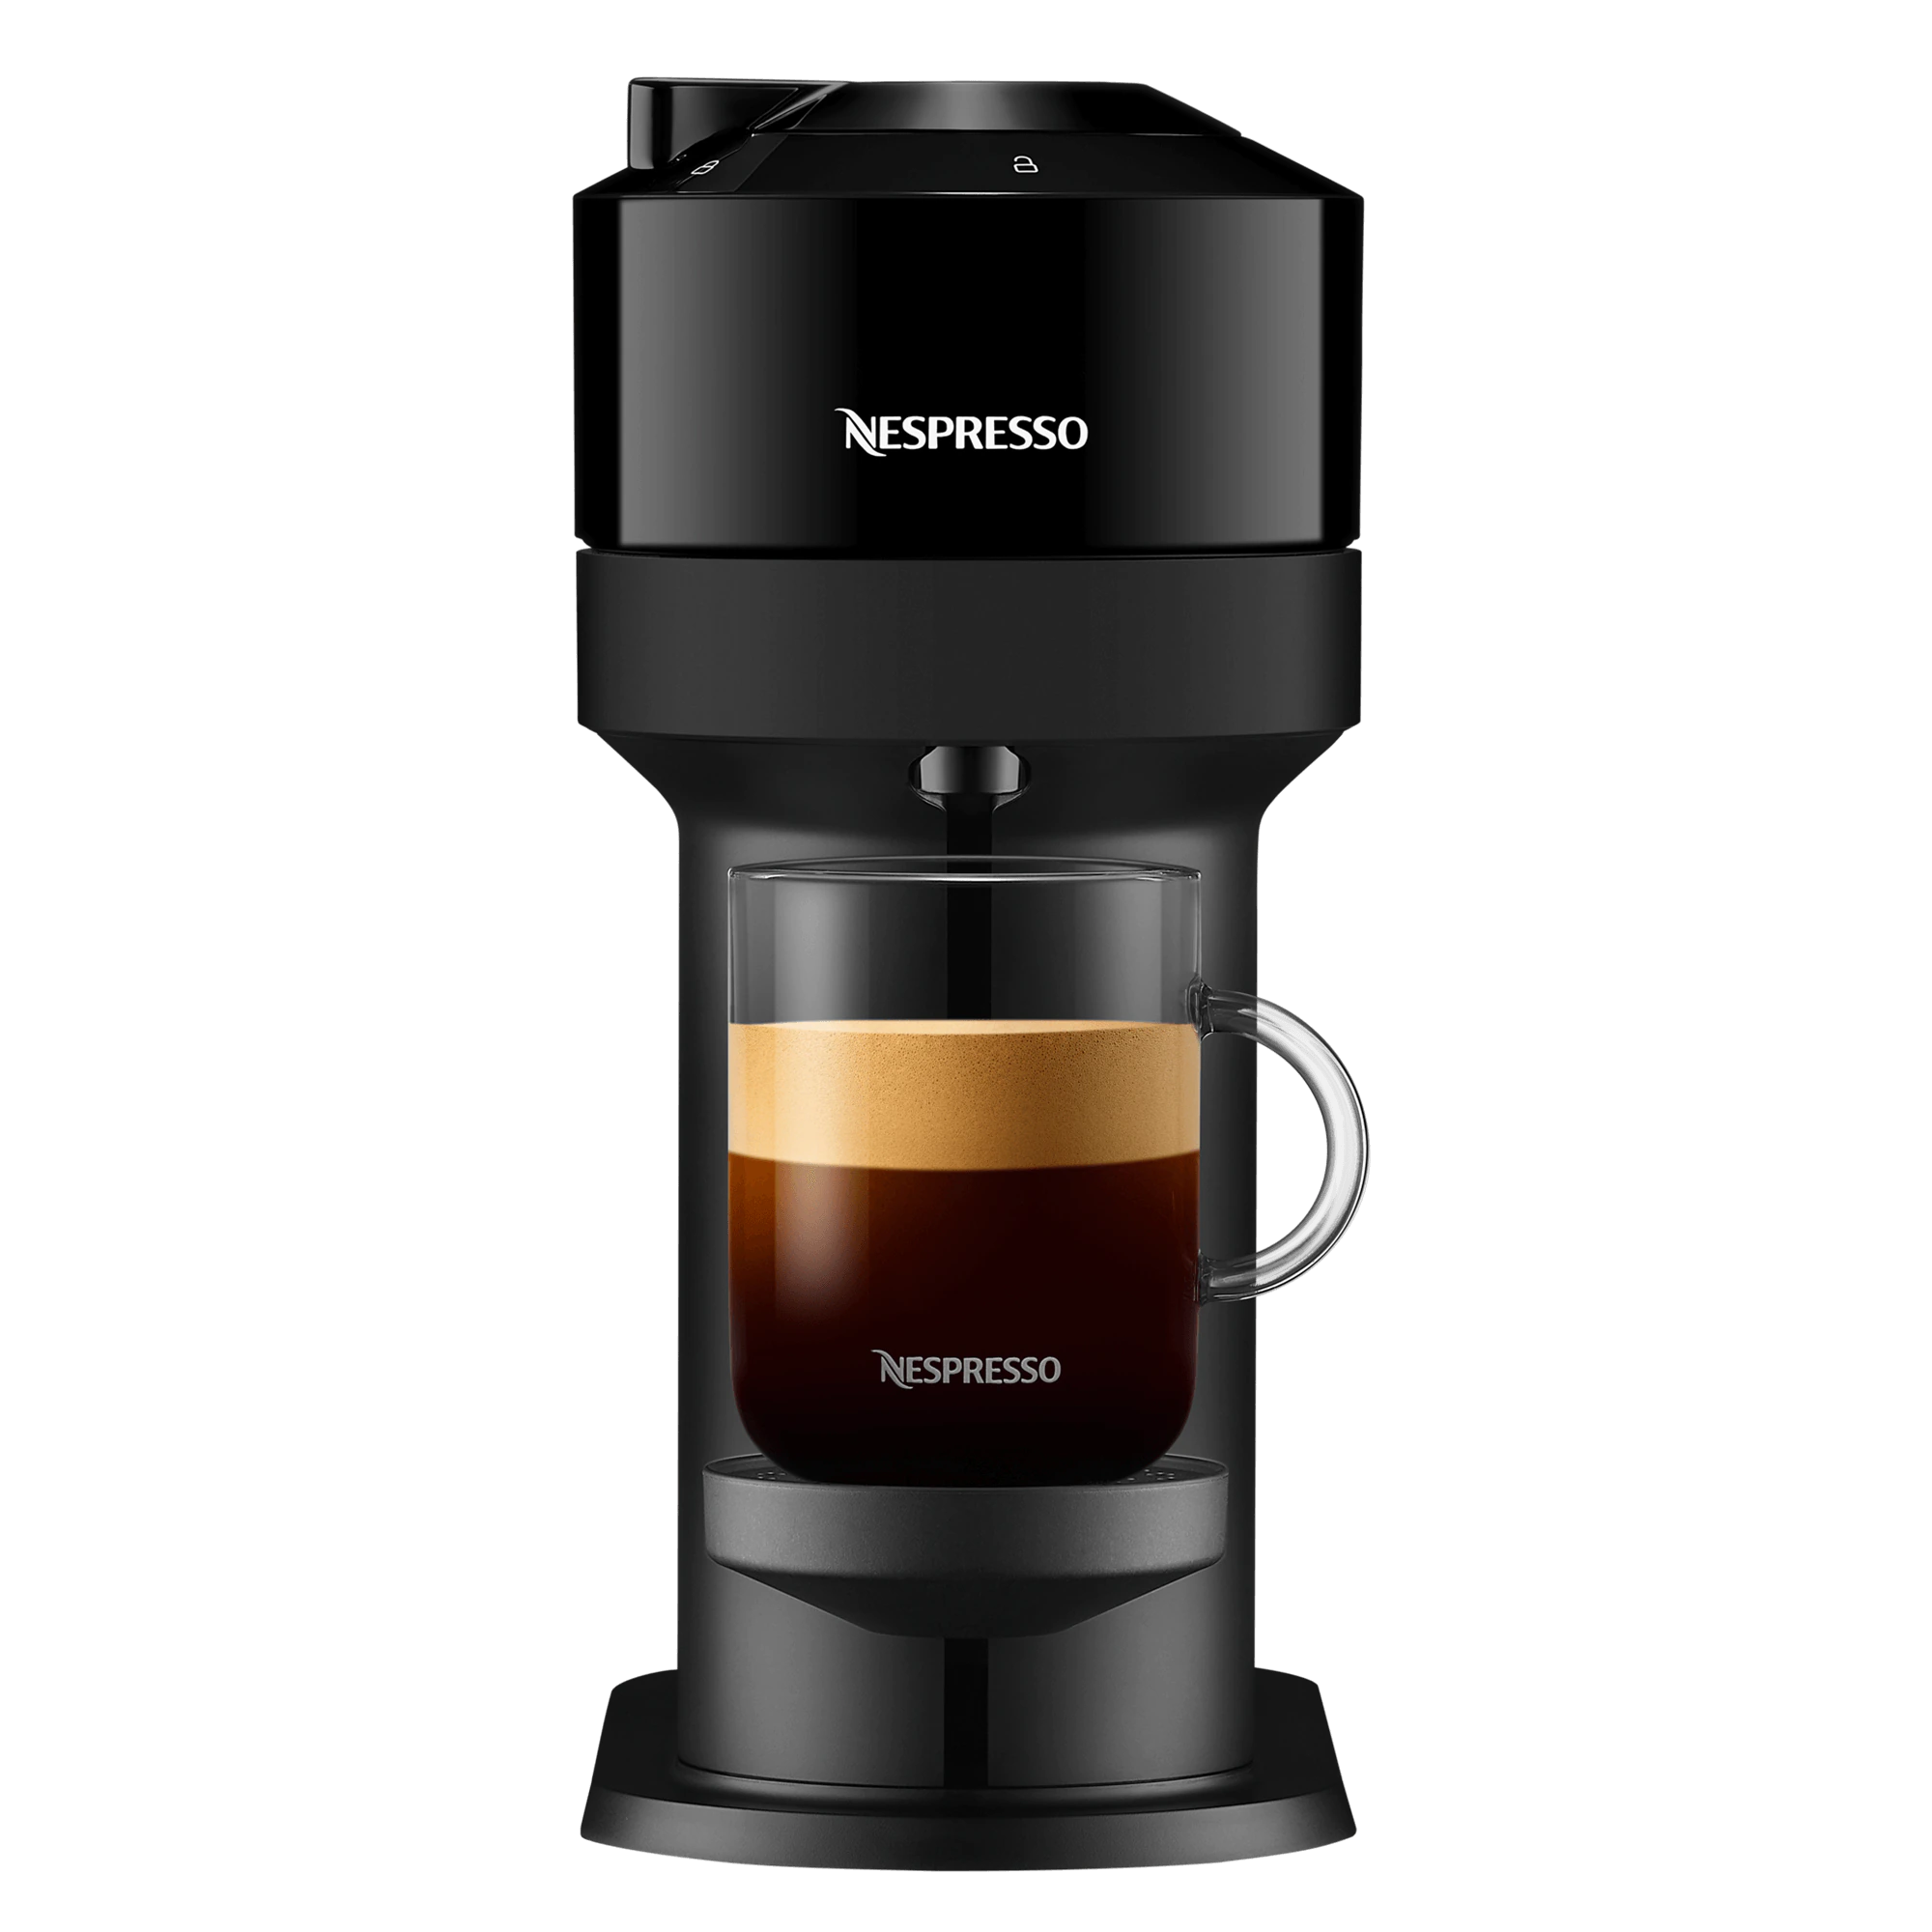 Indtil nu Supplement ortodoks Beställ en kaffemaskin från Nespresso idag | Nespresso